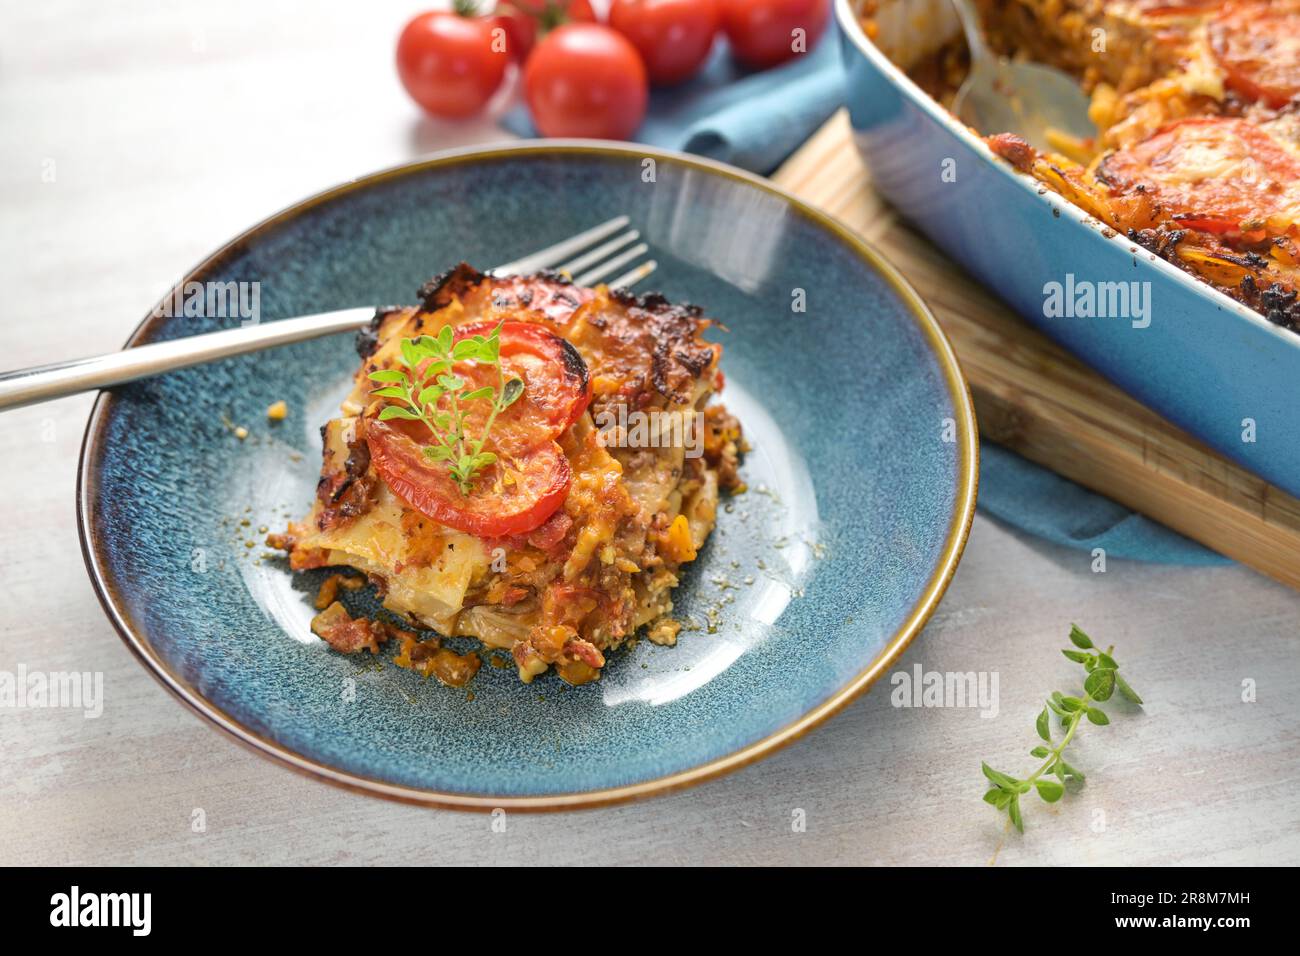 Partie de lasagne dans une assiette bleue, plat de cocotte avec couches de pâtes, sauce bolognaise, bœuf haché, légumes et tomates, recouvert de fromage fondu, c Banque D'Images